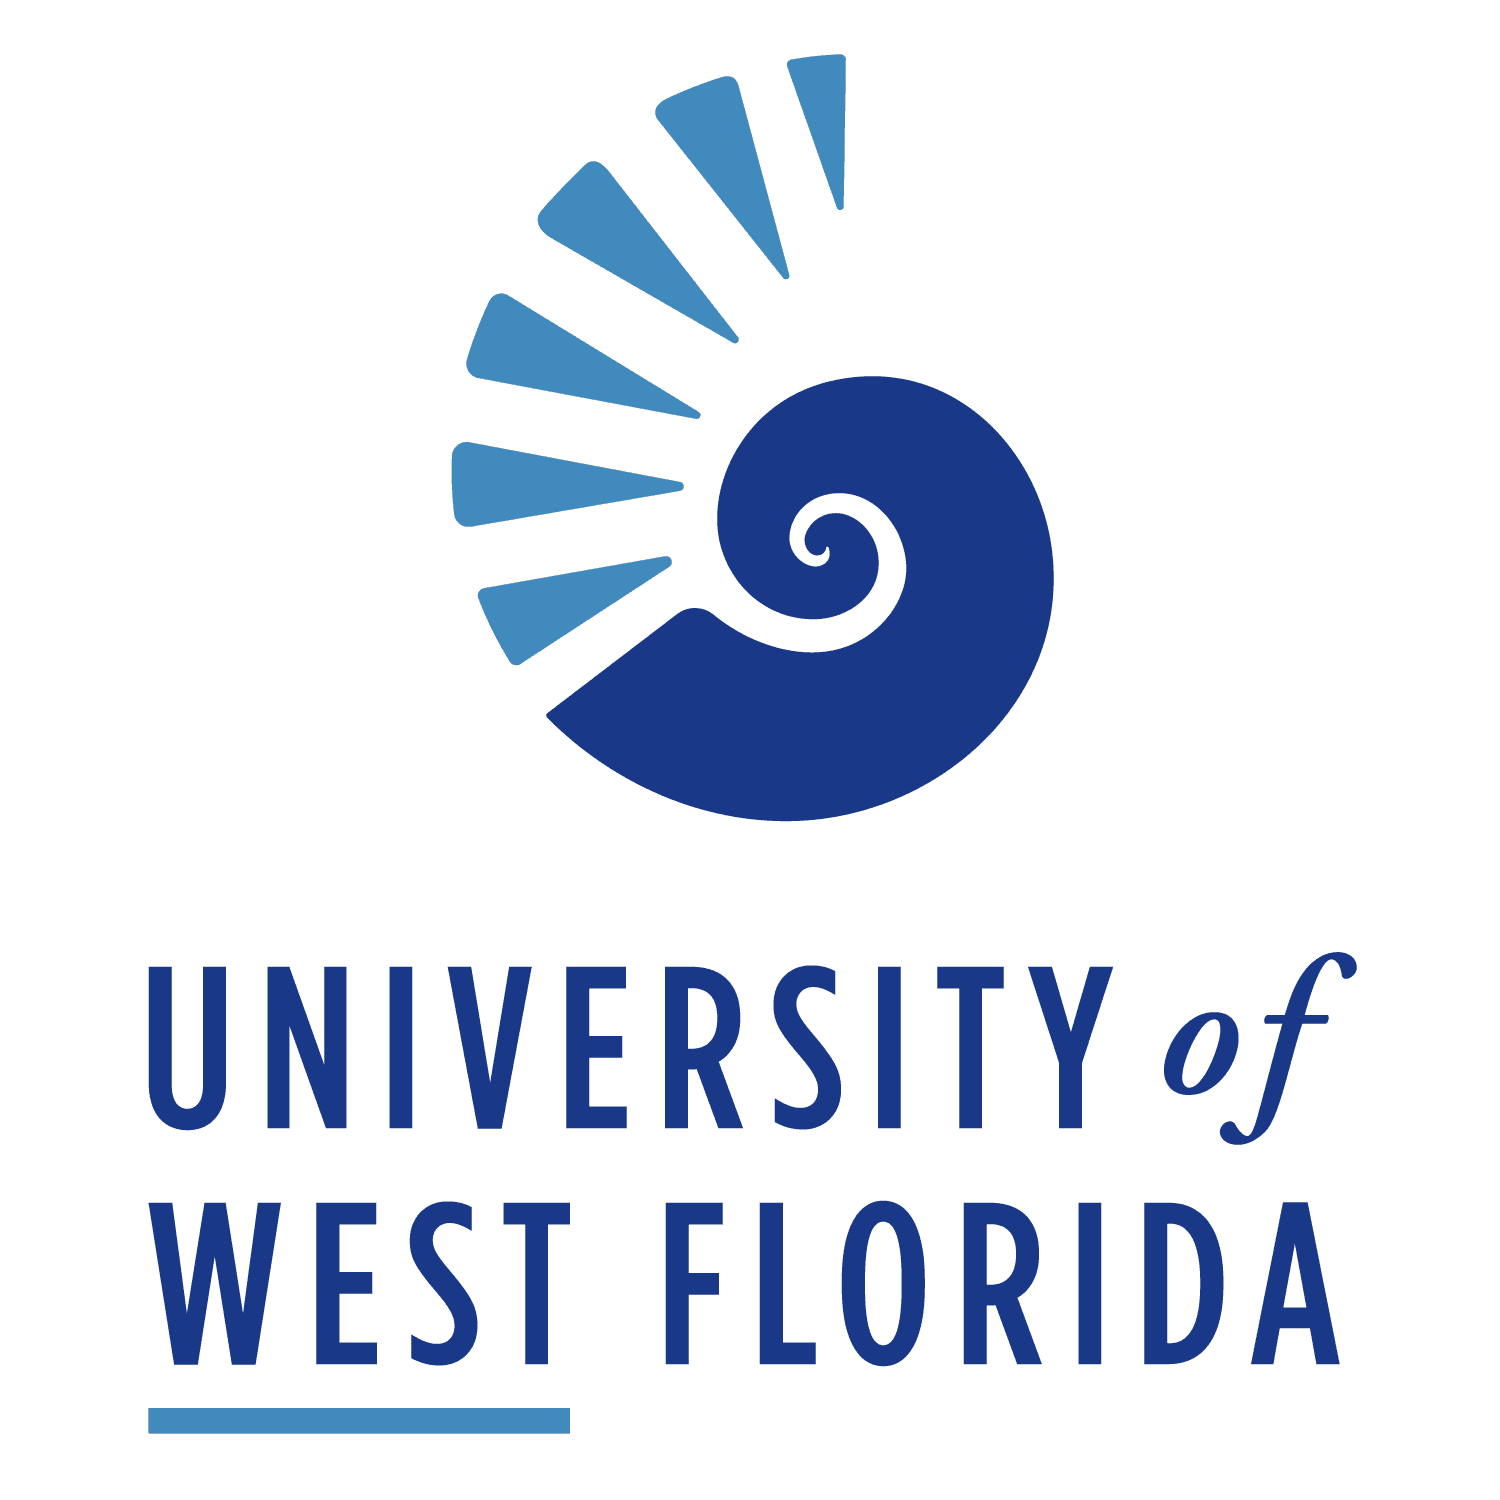 University of West Florida Logo